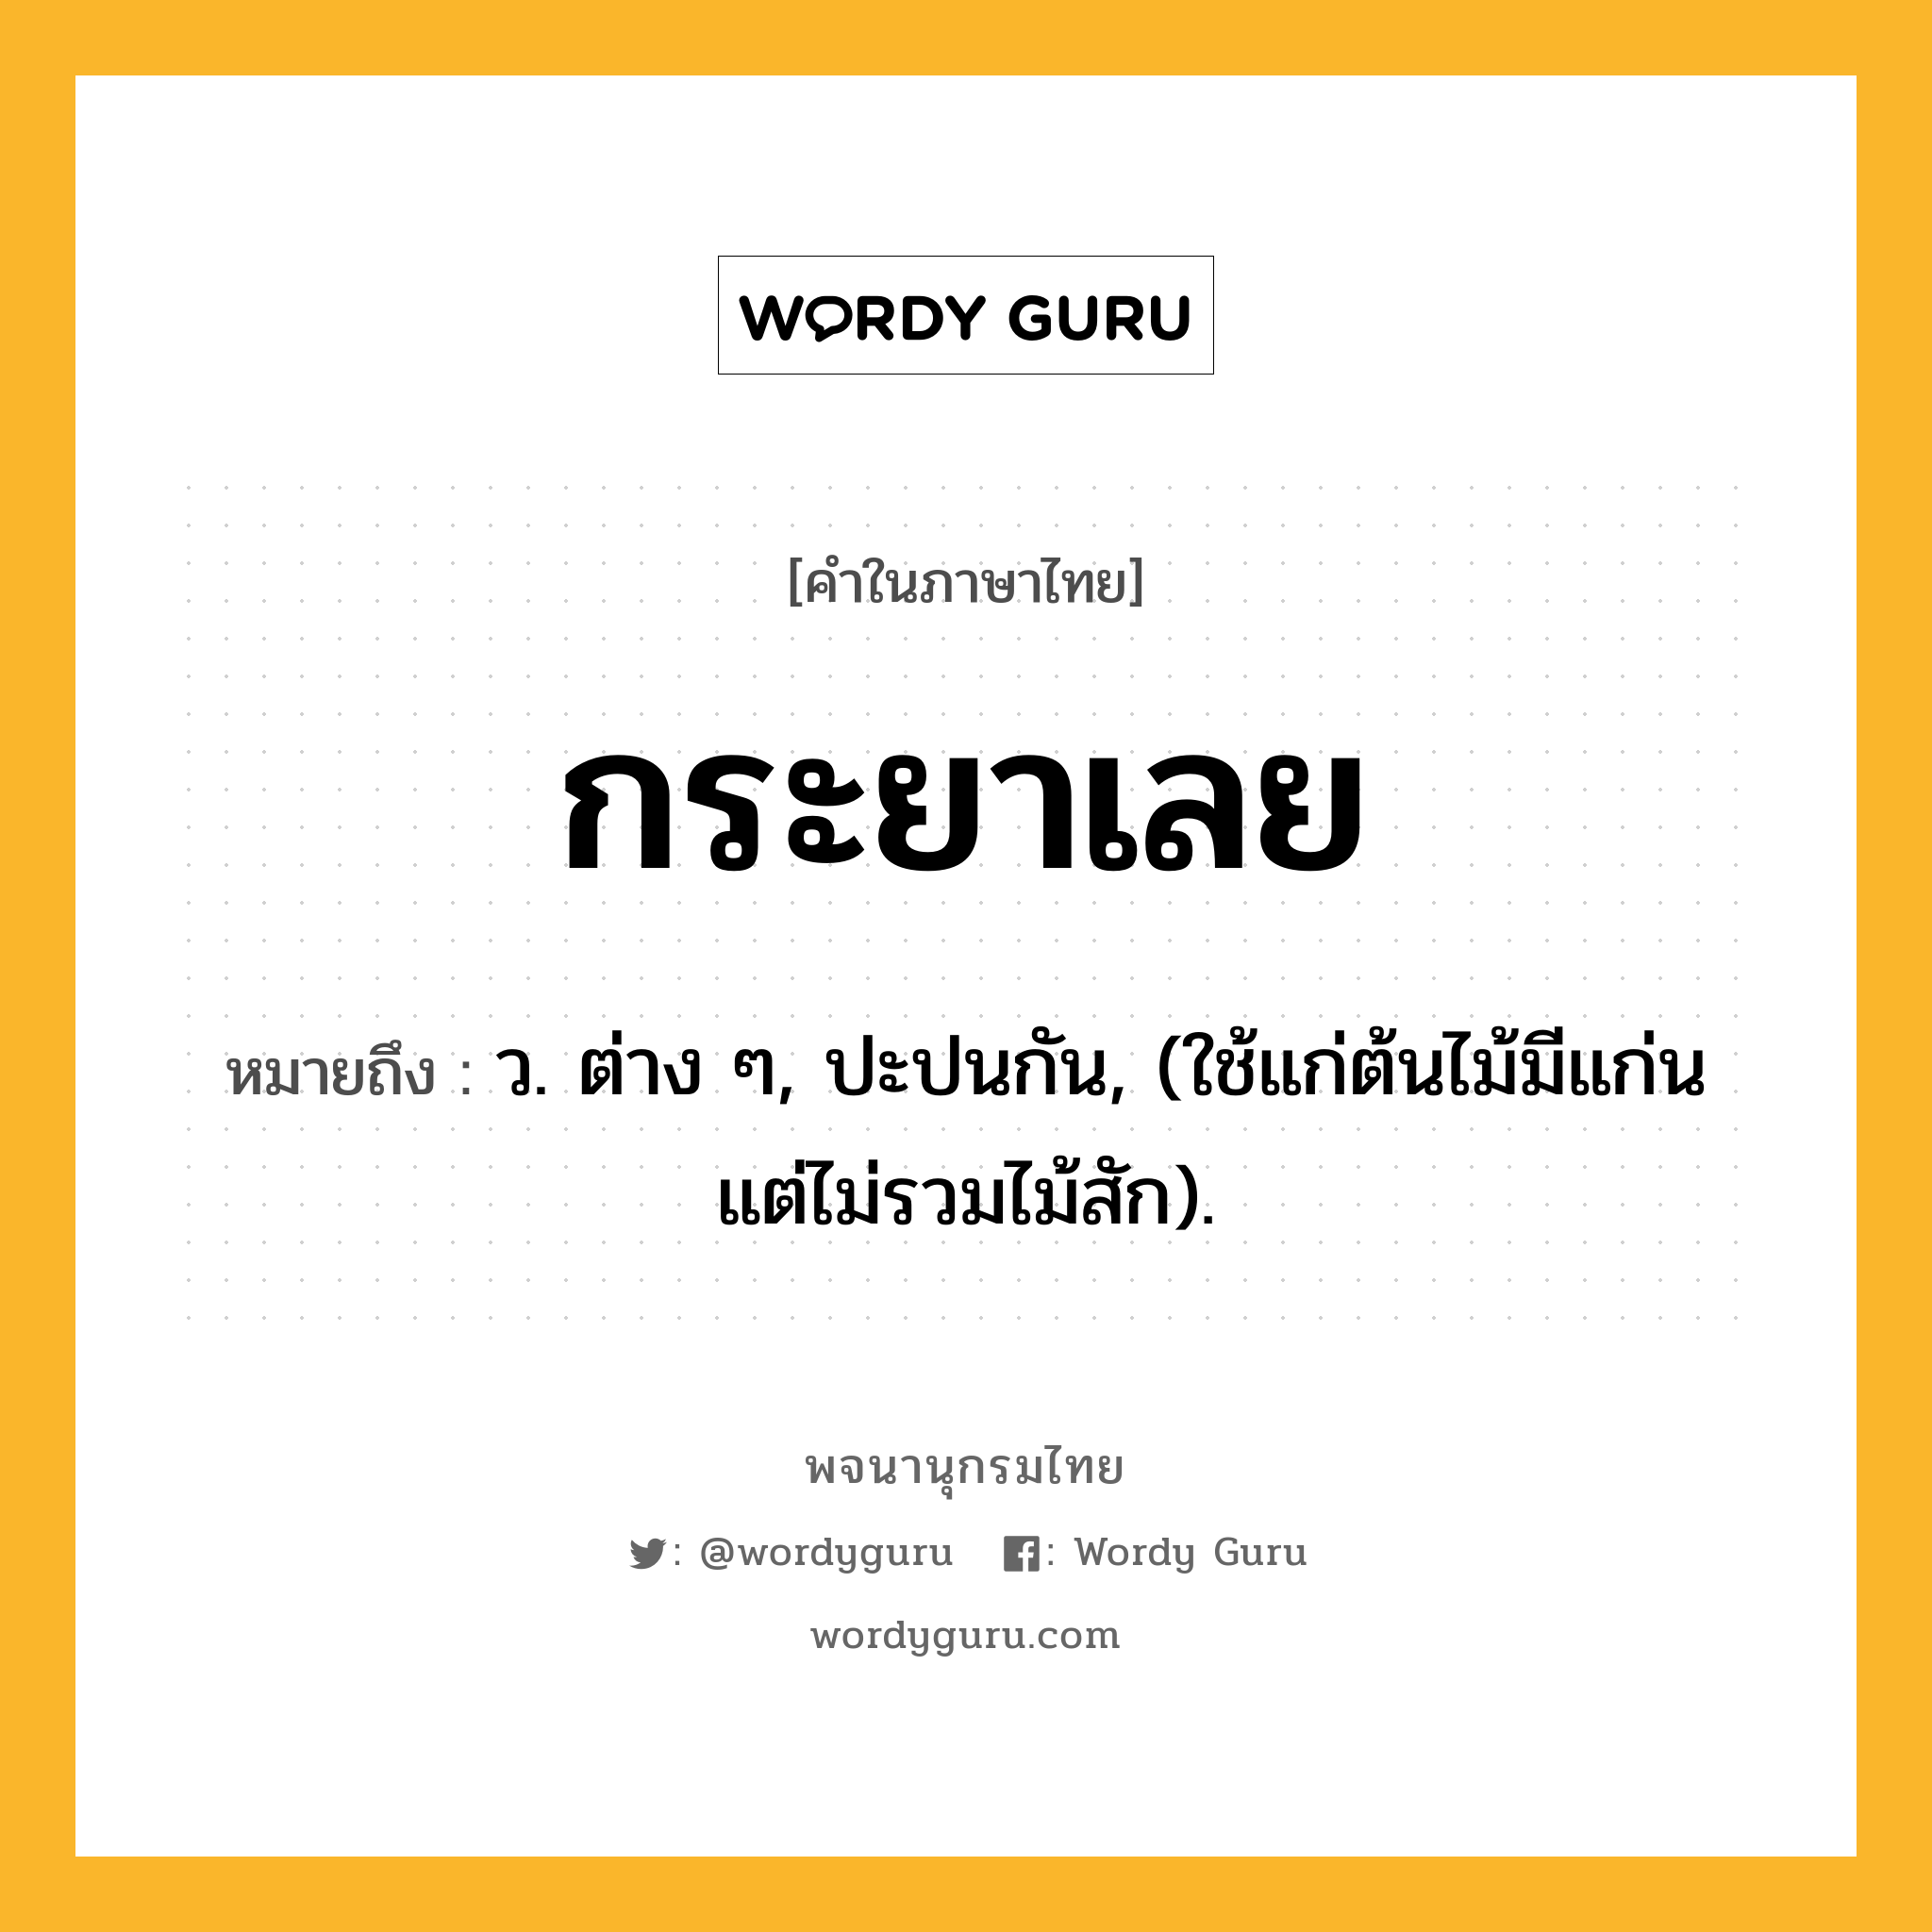 กระยาเลย ความหมาย หมายถึงอะไร?, คำในภาษาไทย กระยาเลย หมายถึง ว. ต่าง ๆ, ปะปนกัน, (ใช้แก่ต้นไม้มีแก่น แต่ไม่รวมไม้สัก).